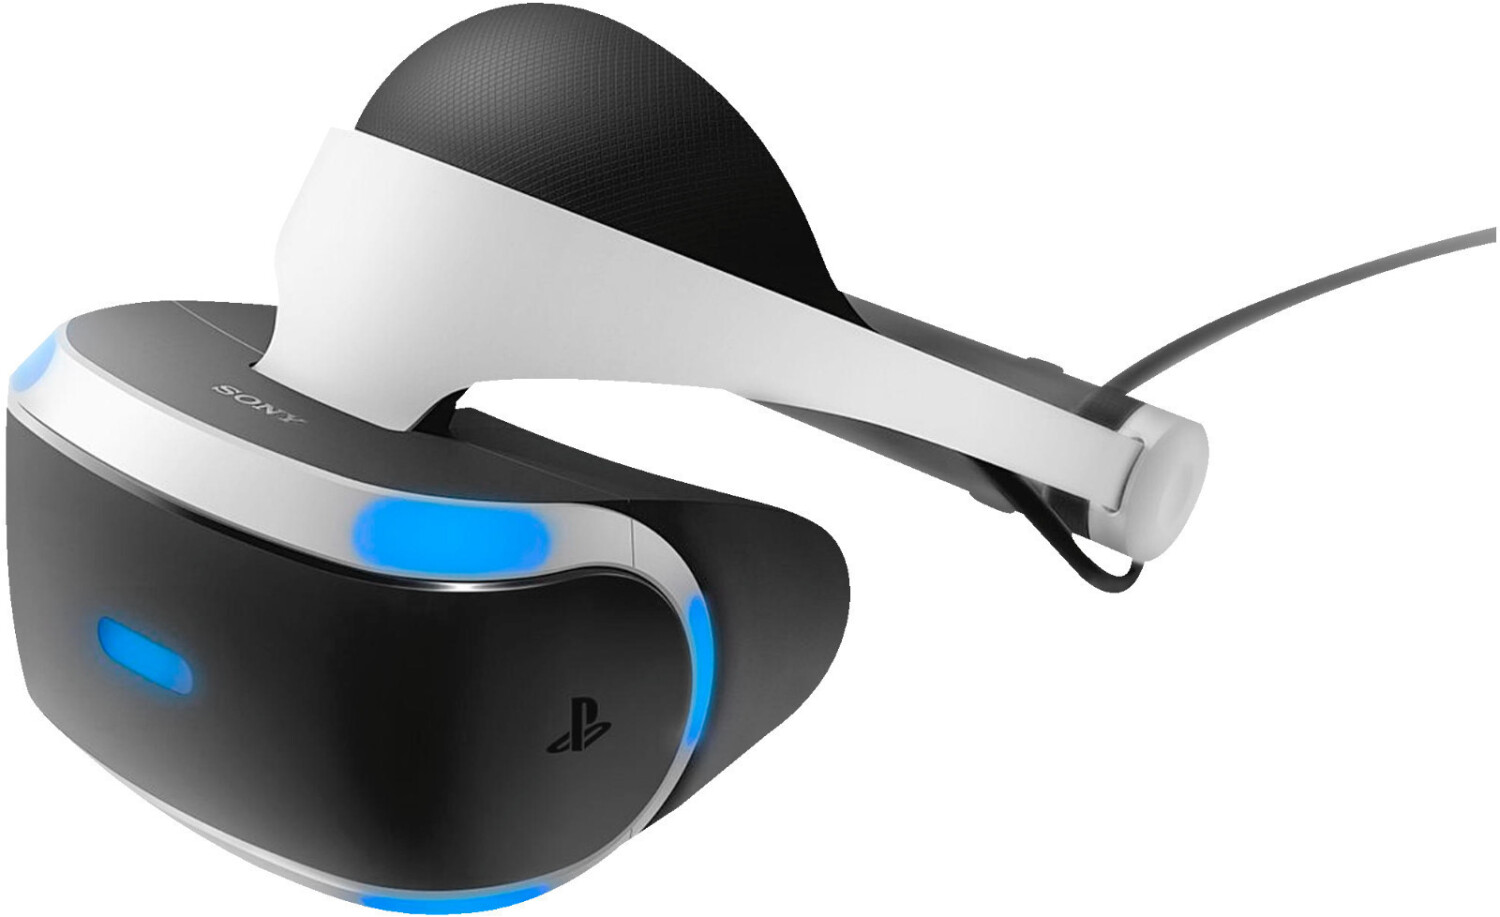 Soldes Sony PlayStation VR 2024 au meilleur prix sur